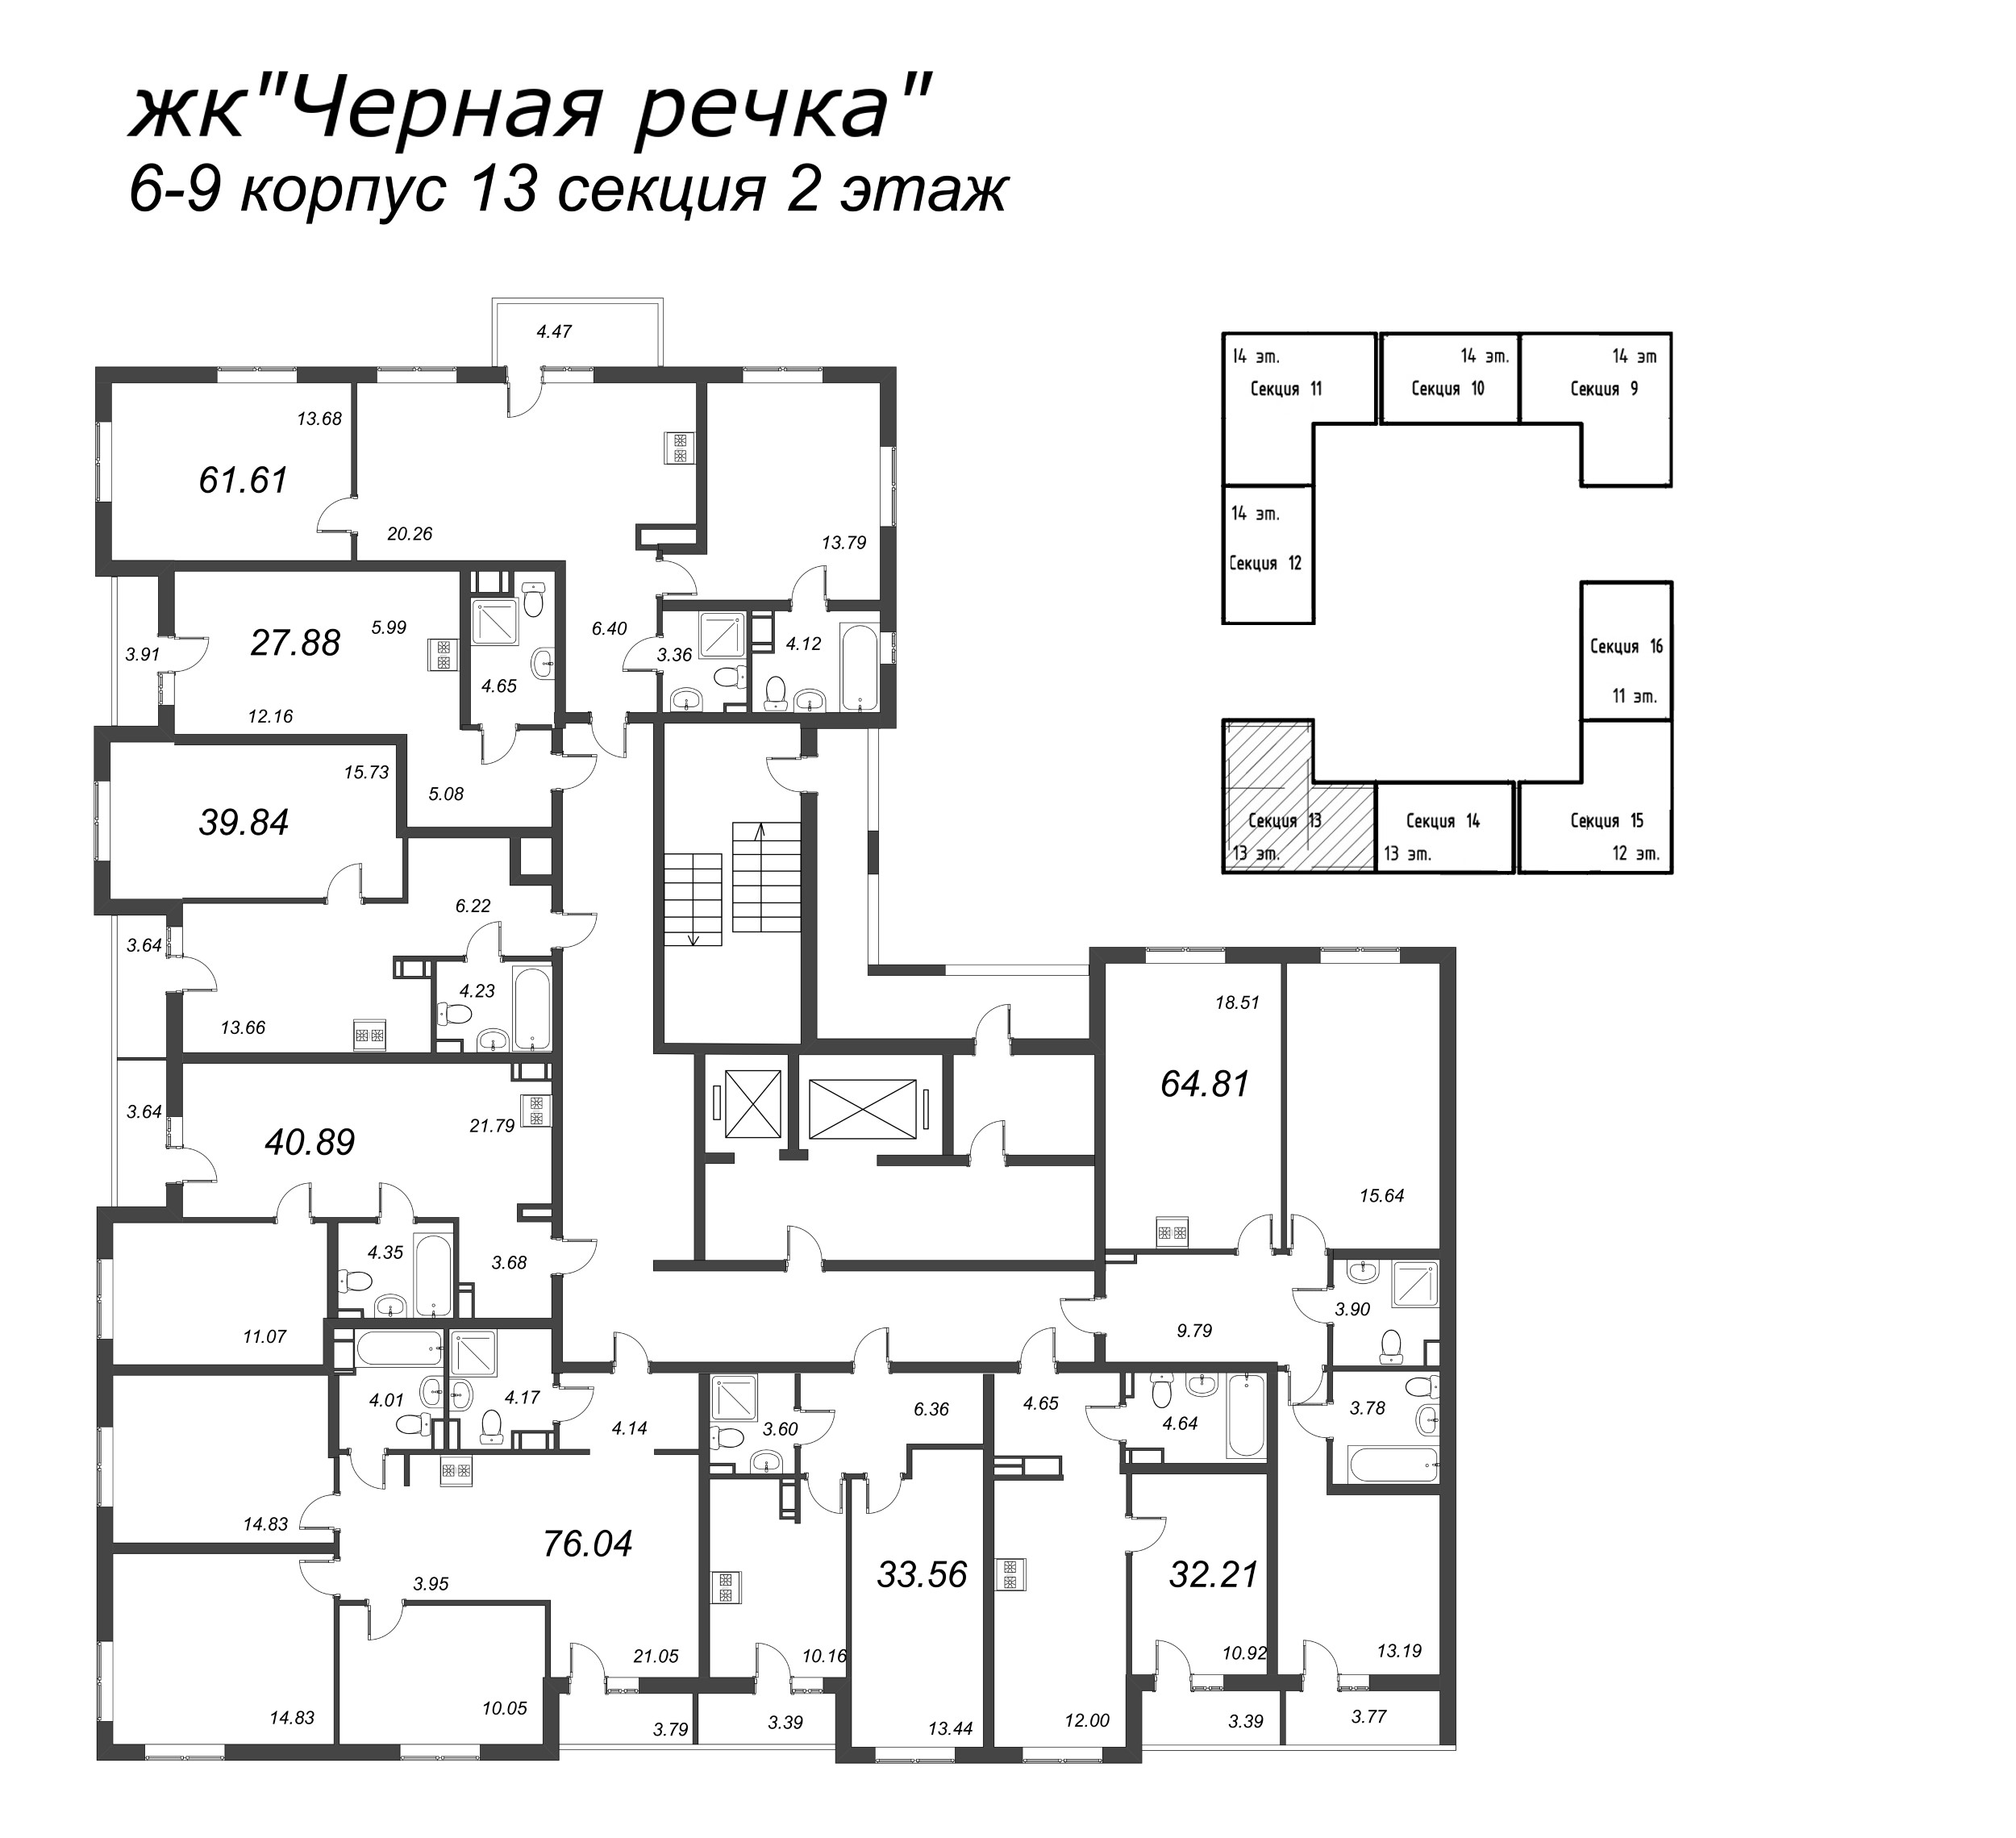 4-комнатная (Евро) квартира, 76.04 м² в ЖК "Чёрная речка" - планировка этажа